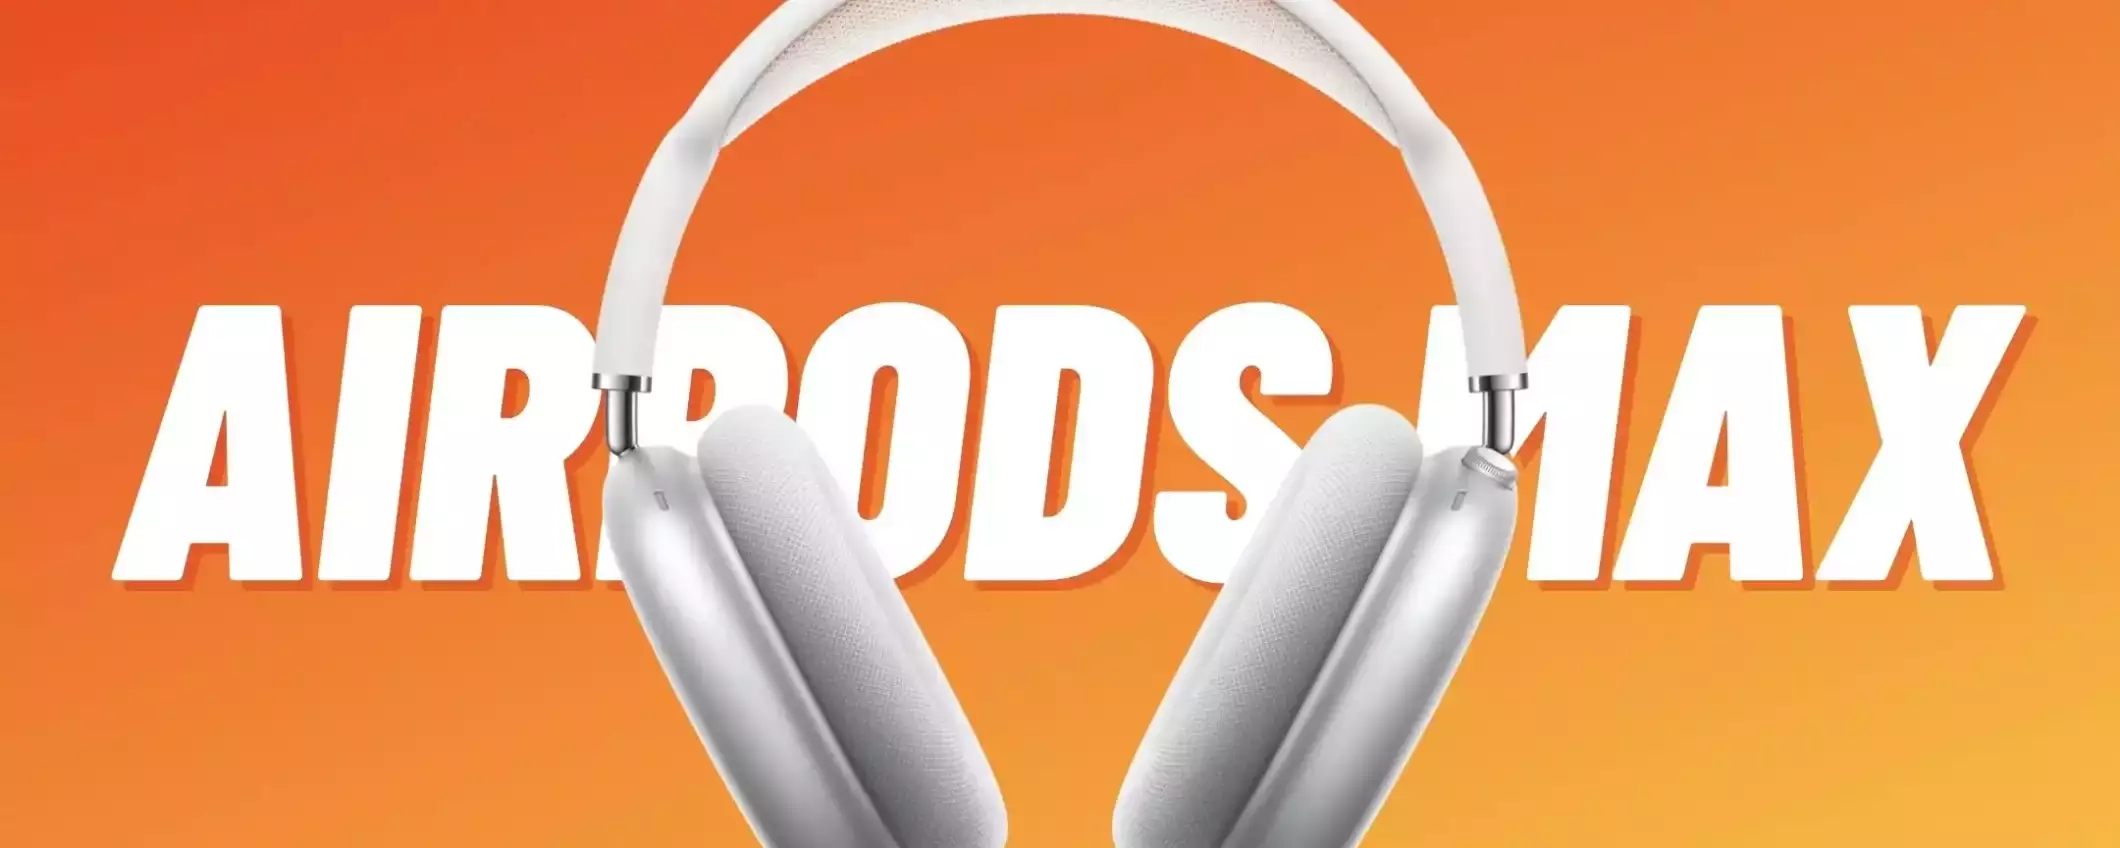 AirPods Max: le migliori cuffie over-ear di Apple, di nuovo DISPONIBILI